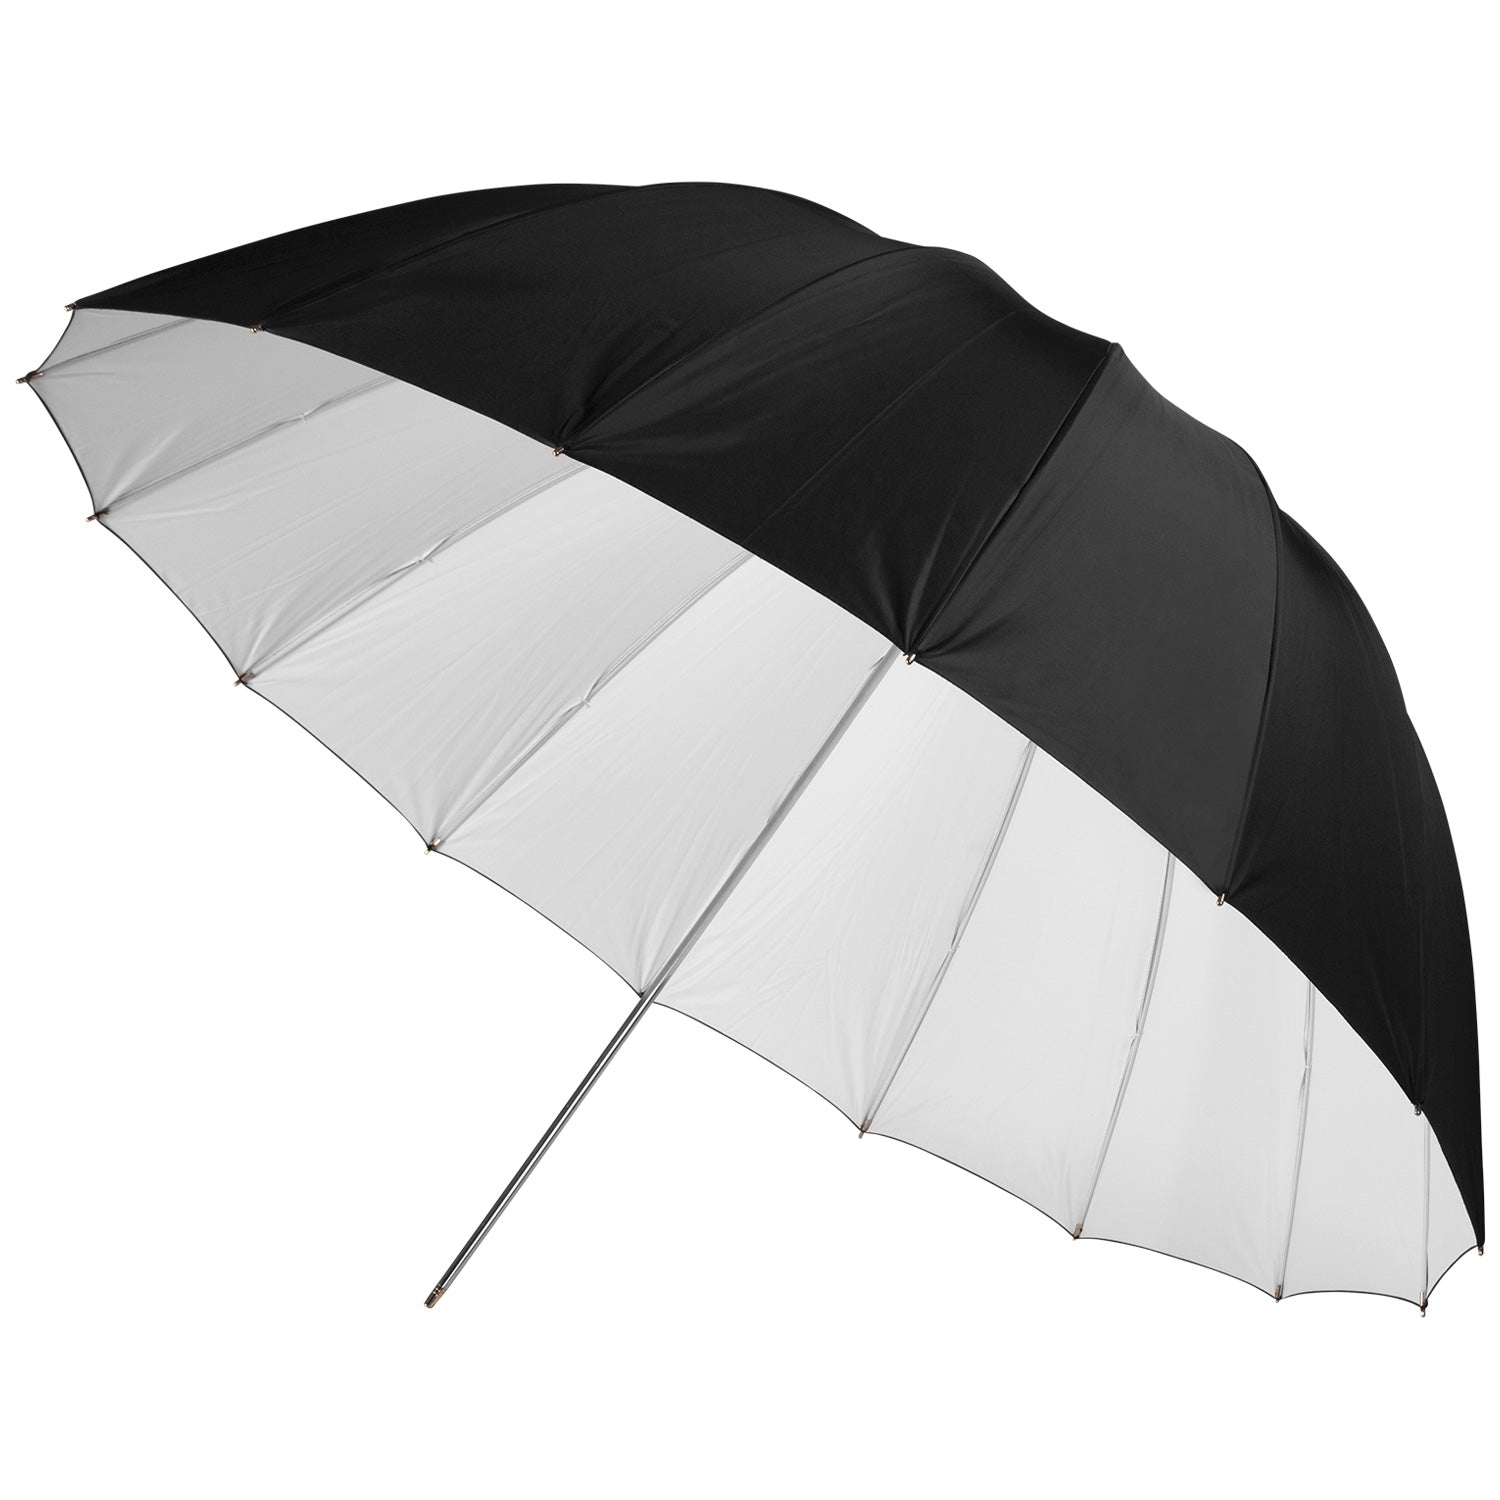 Deep Umbrella - White Bounce (43")